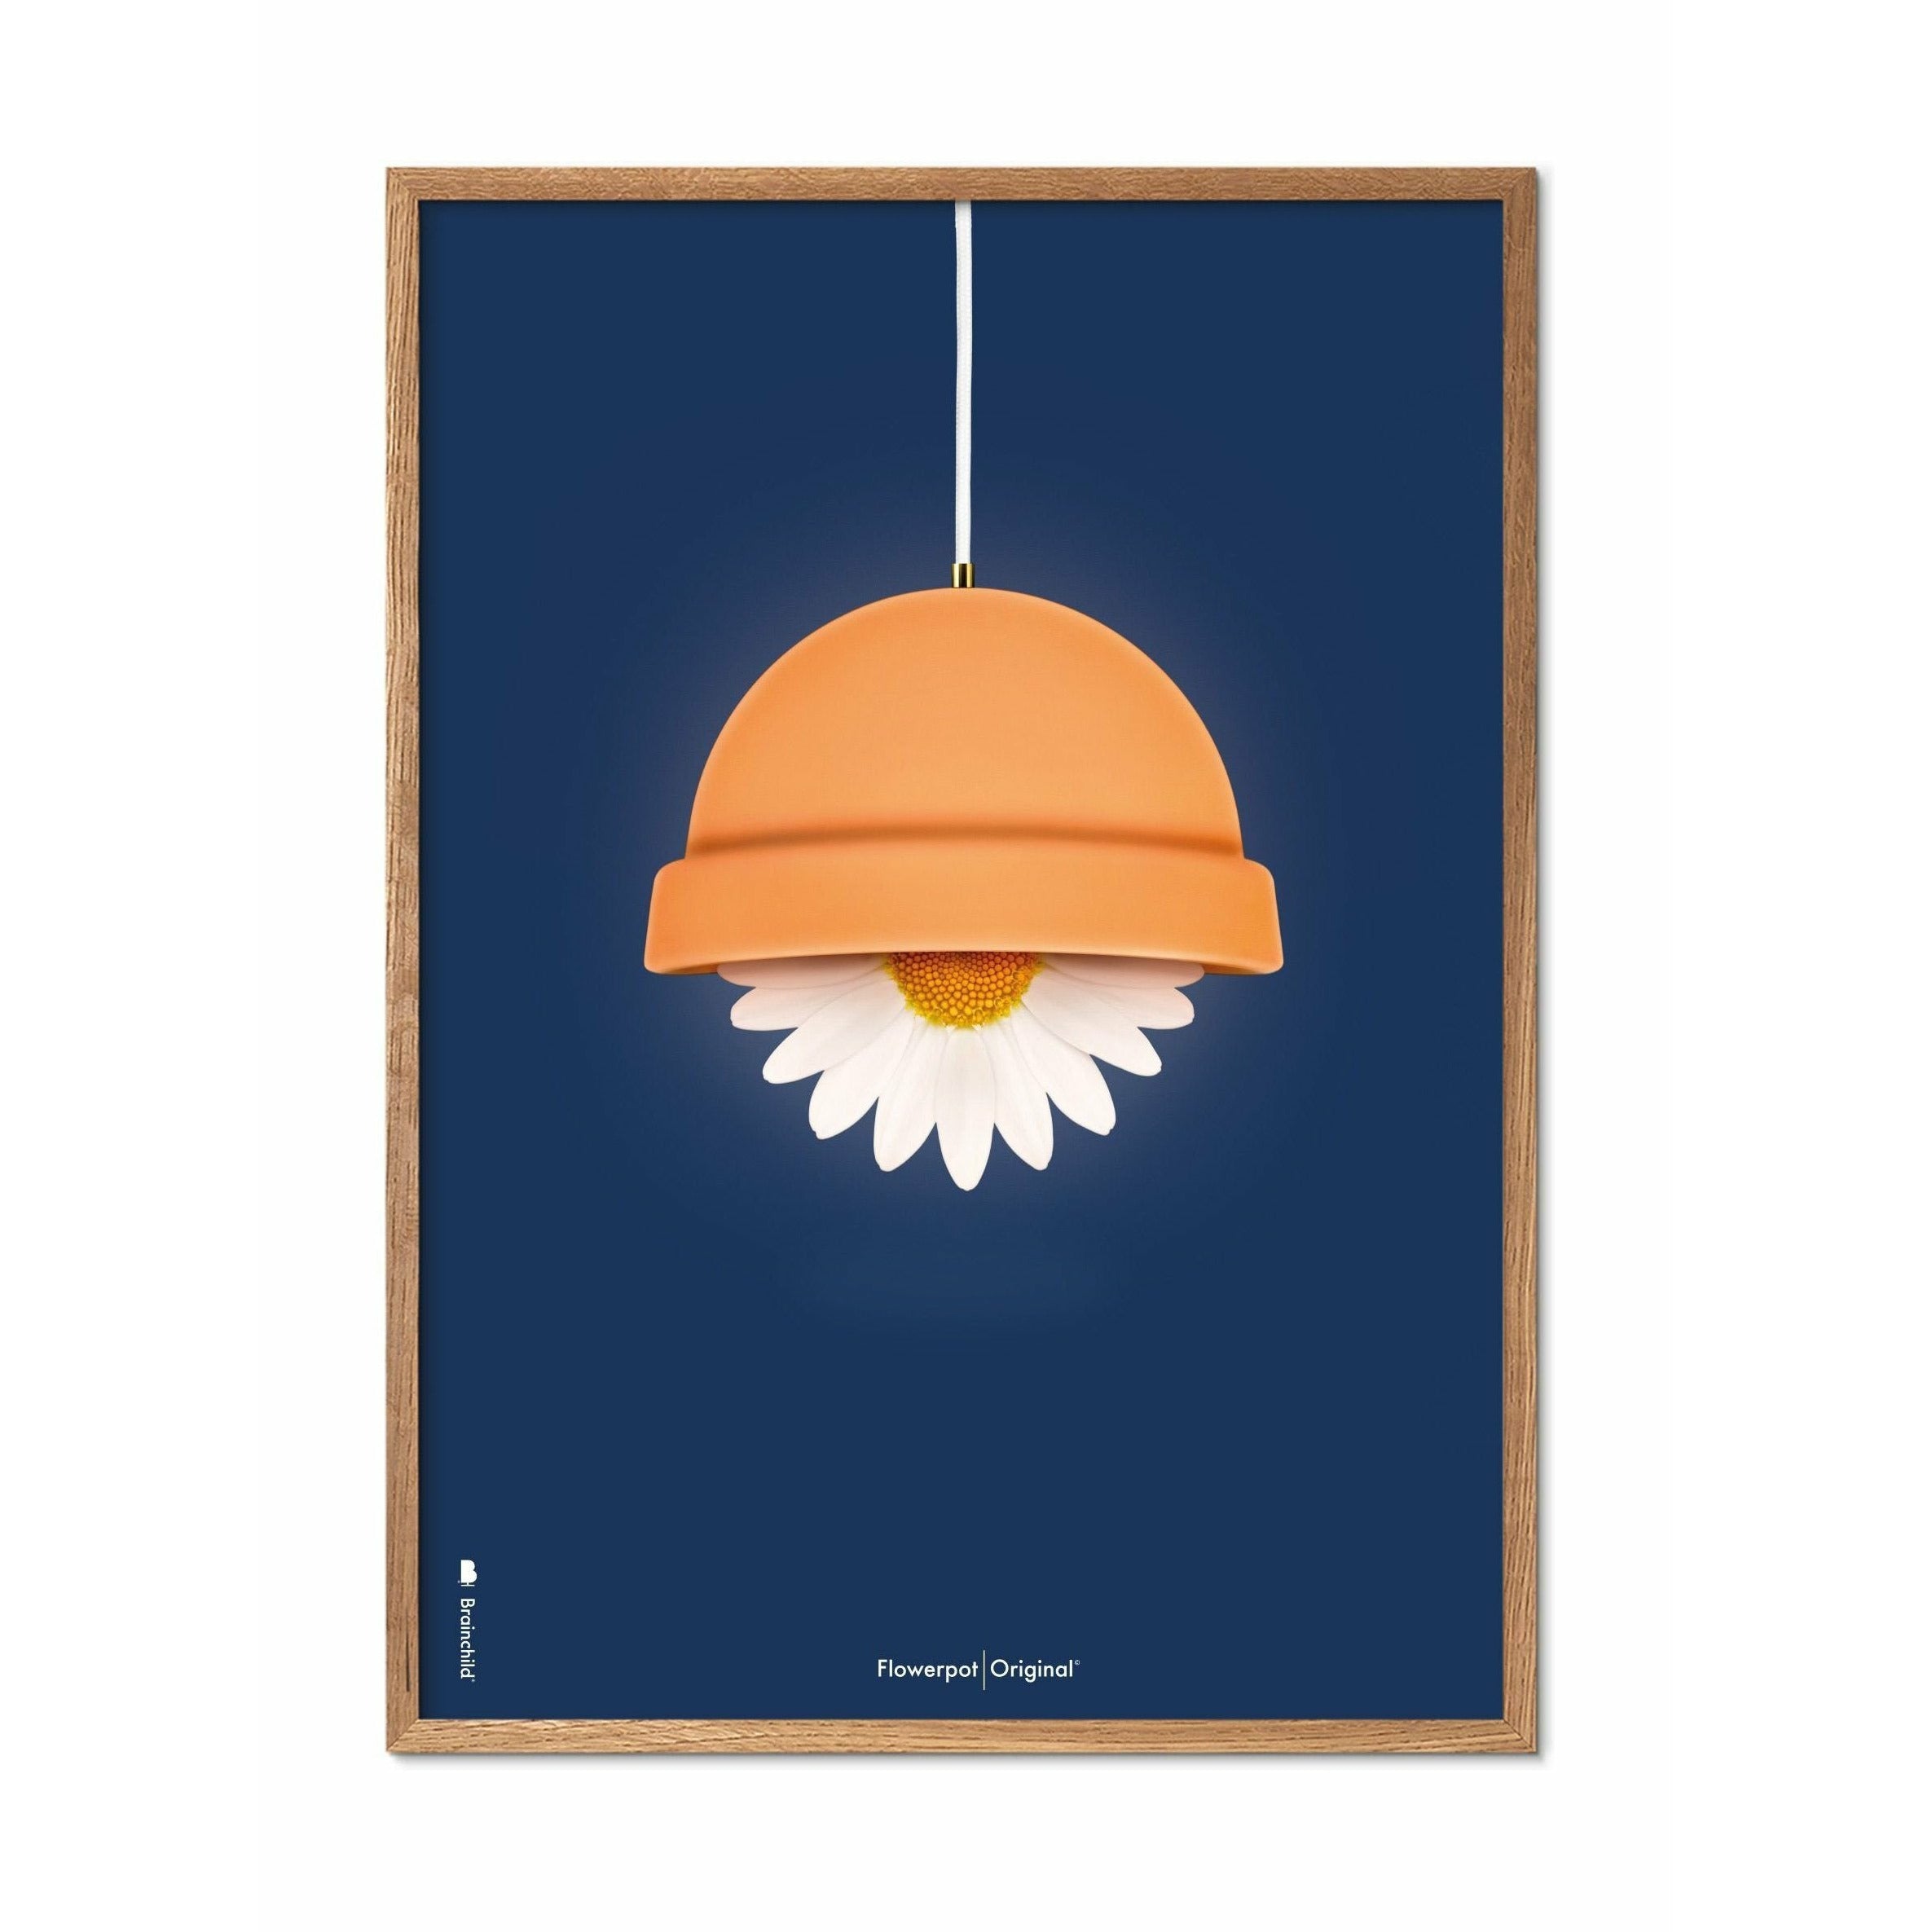 Klasický plakát Brainchild Flowerpot, rám vyrobený z lehkého dřeva 30x40 cm, tmavě modré pozadí